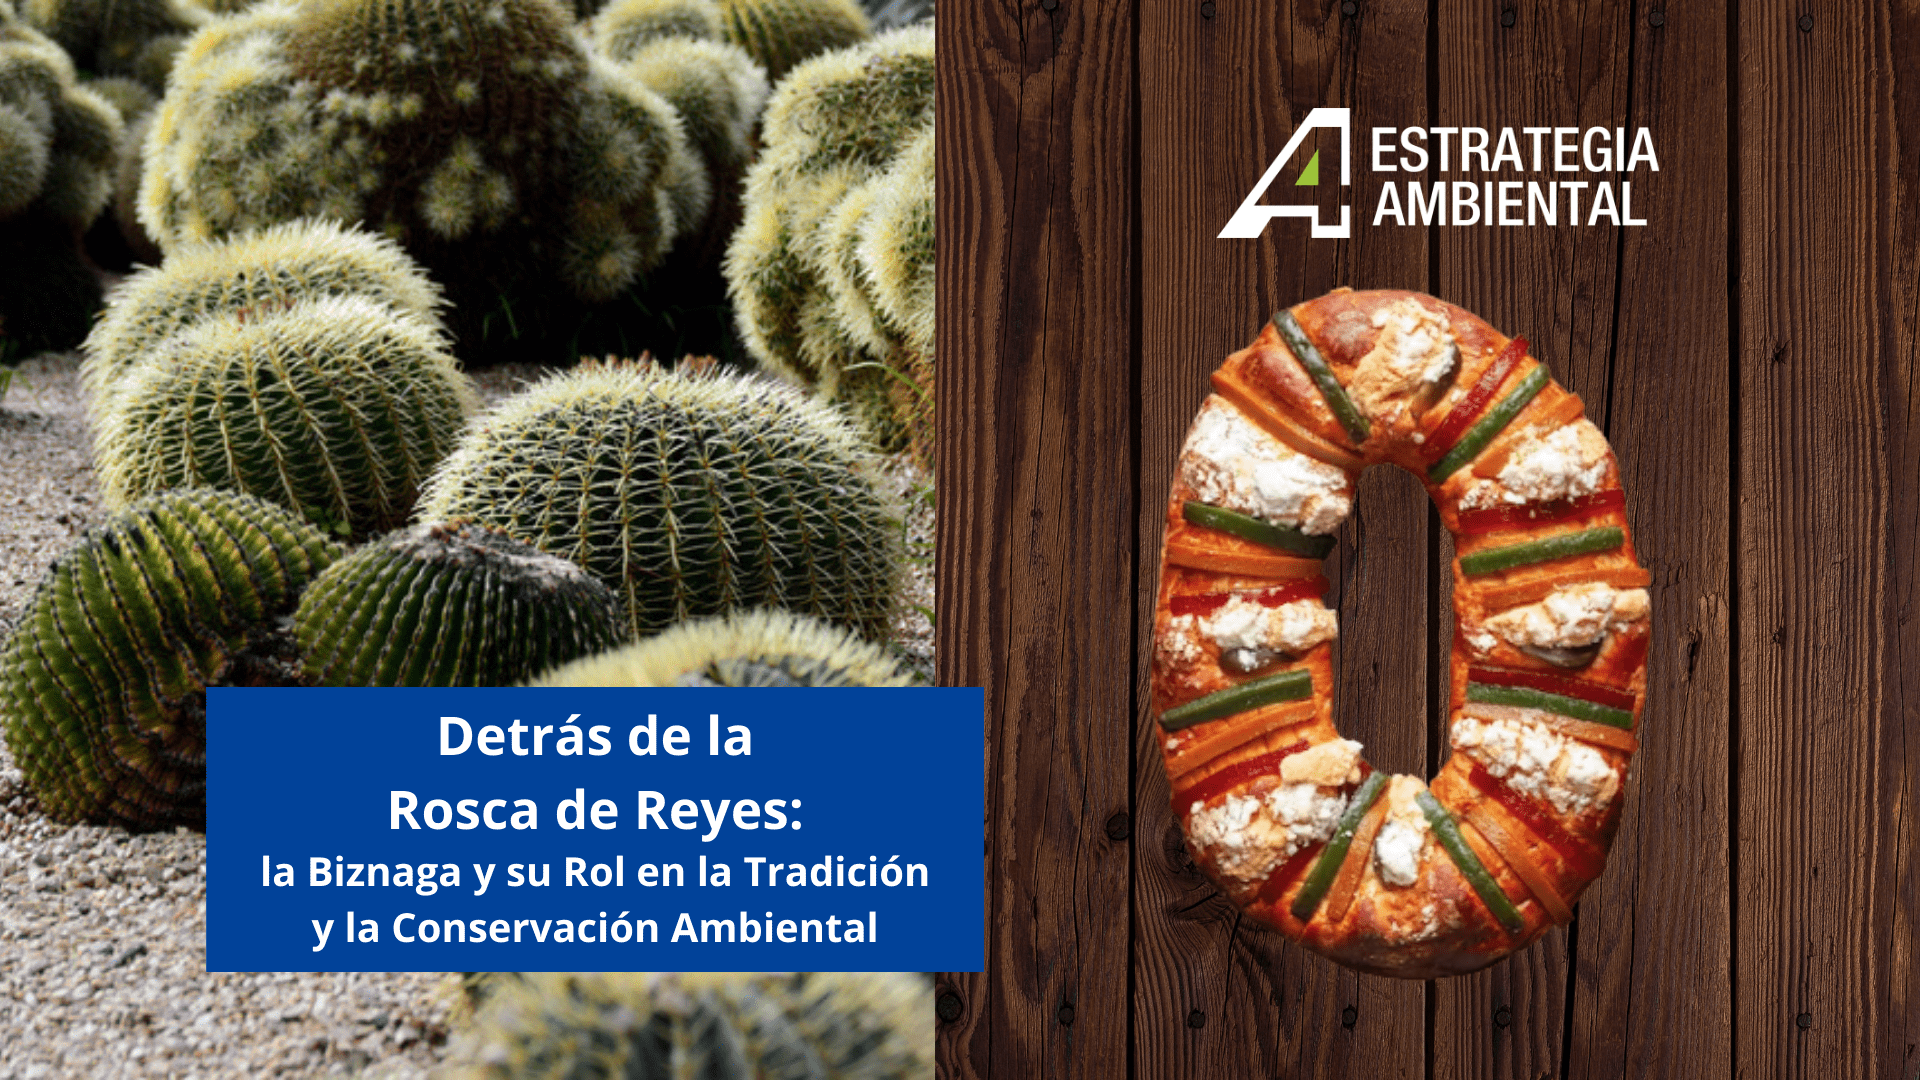 Detrás de la Rosca de Reyes: La Biznaga y su Rol en la Tradición y la Conservación Ambiental